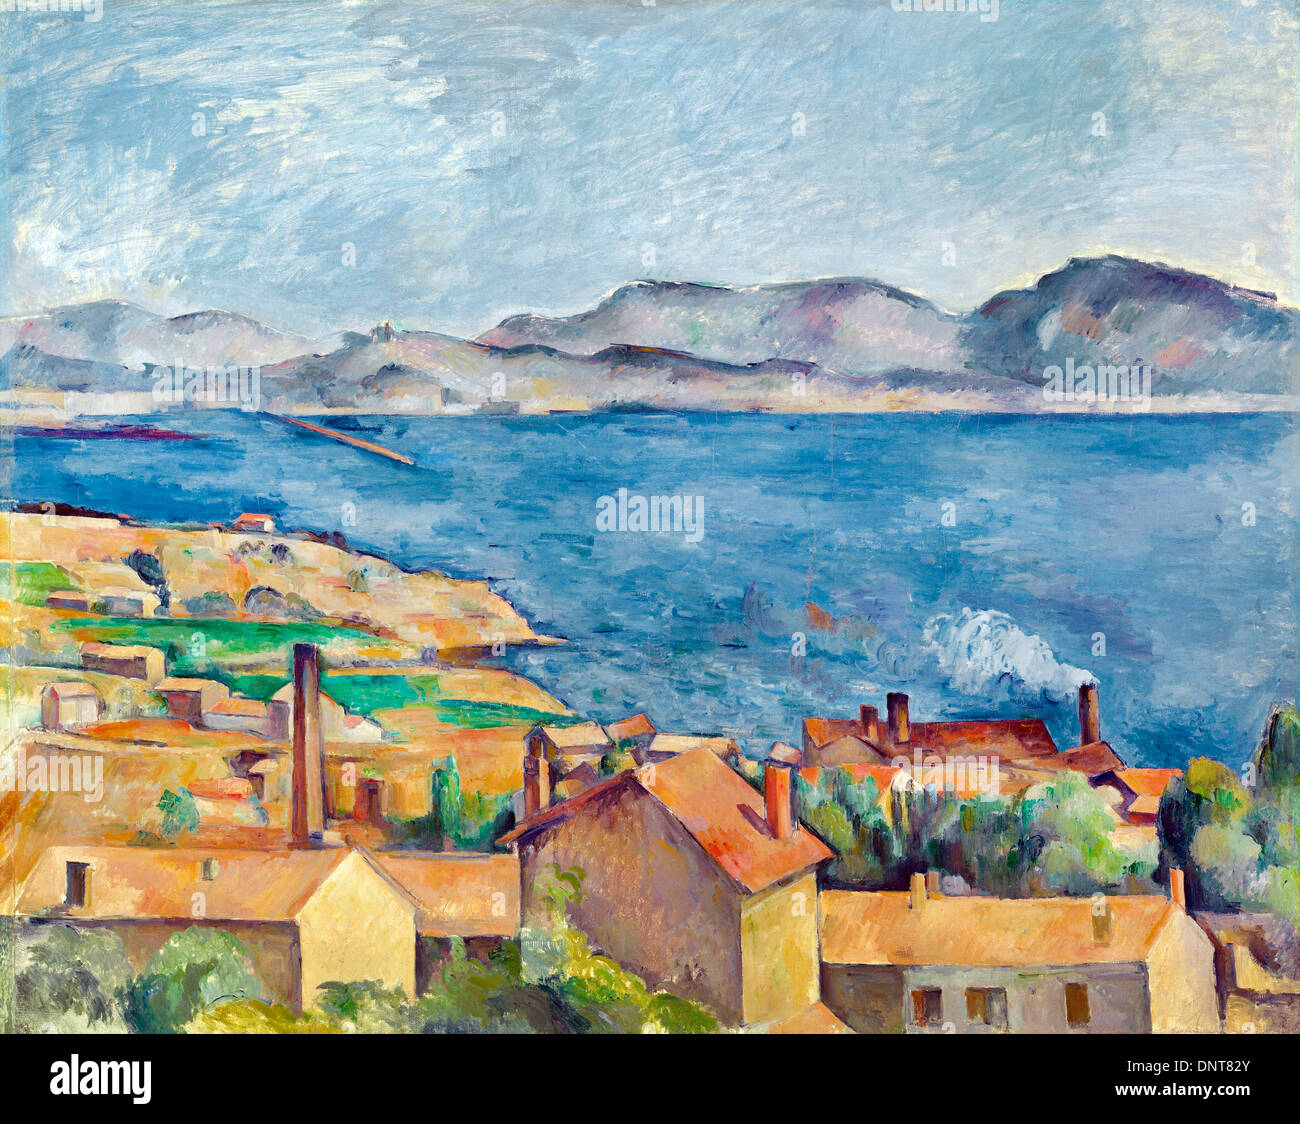 Paul Cézanne, la baie de Marseille, vu de l'Estaque. Vers 1885. Huile sur toile. Art Institute of Chicago, Chicago, USA. Banque D'Images